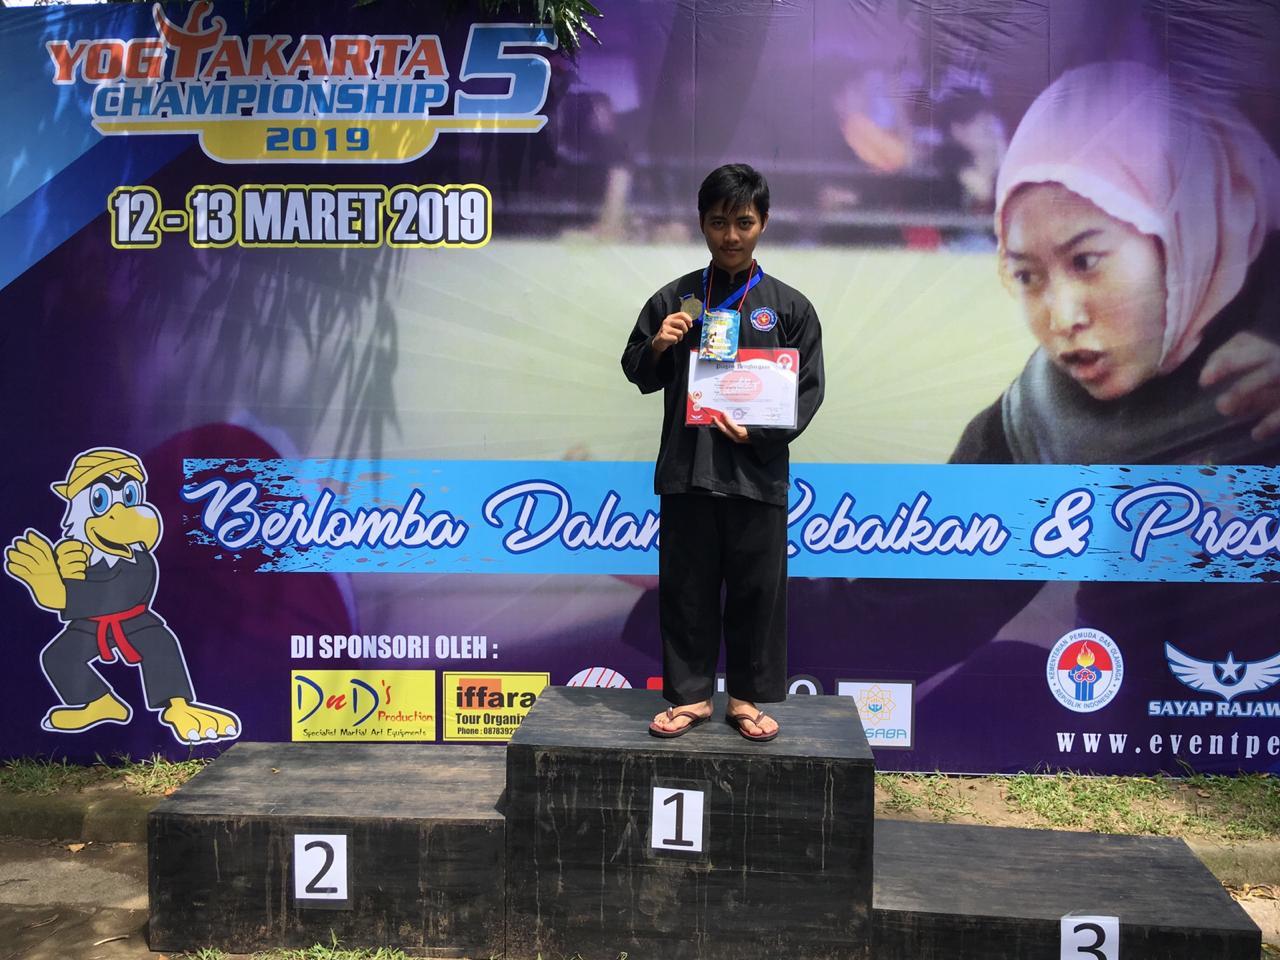 Ganesha, Mahasiswa STMIK AKAKOM Yogyakarta, Meraih Juara 1 Yogyakarta Campionship 5 2019